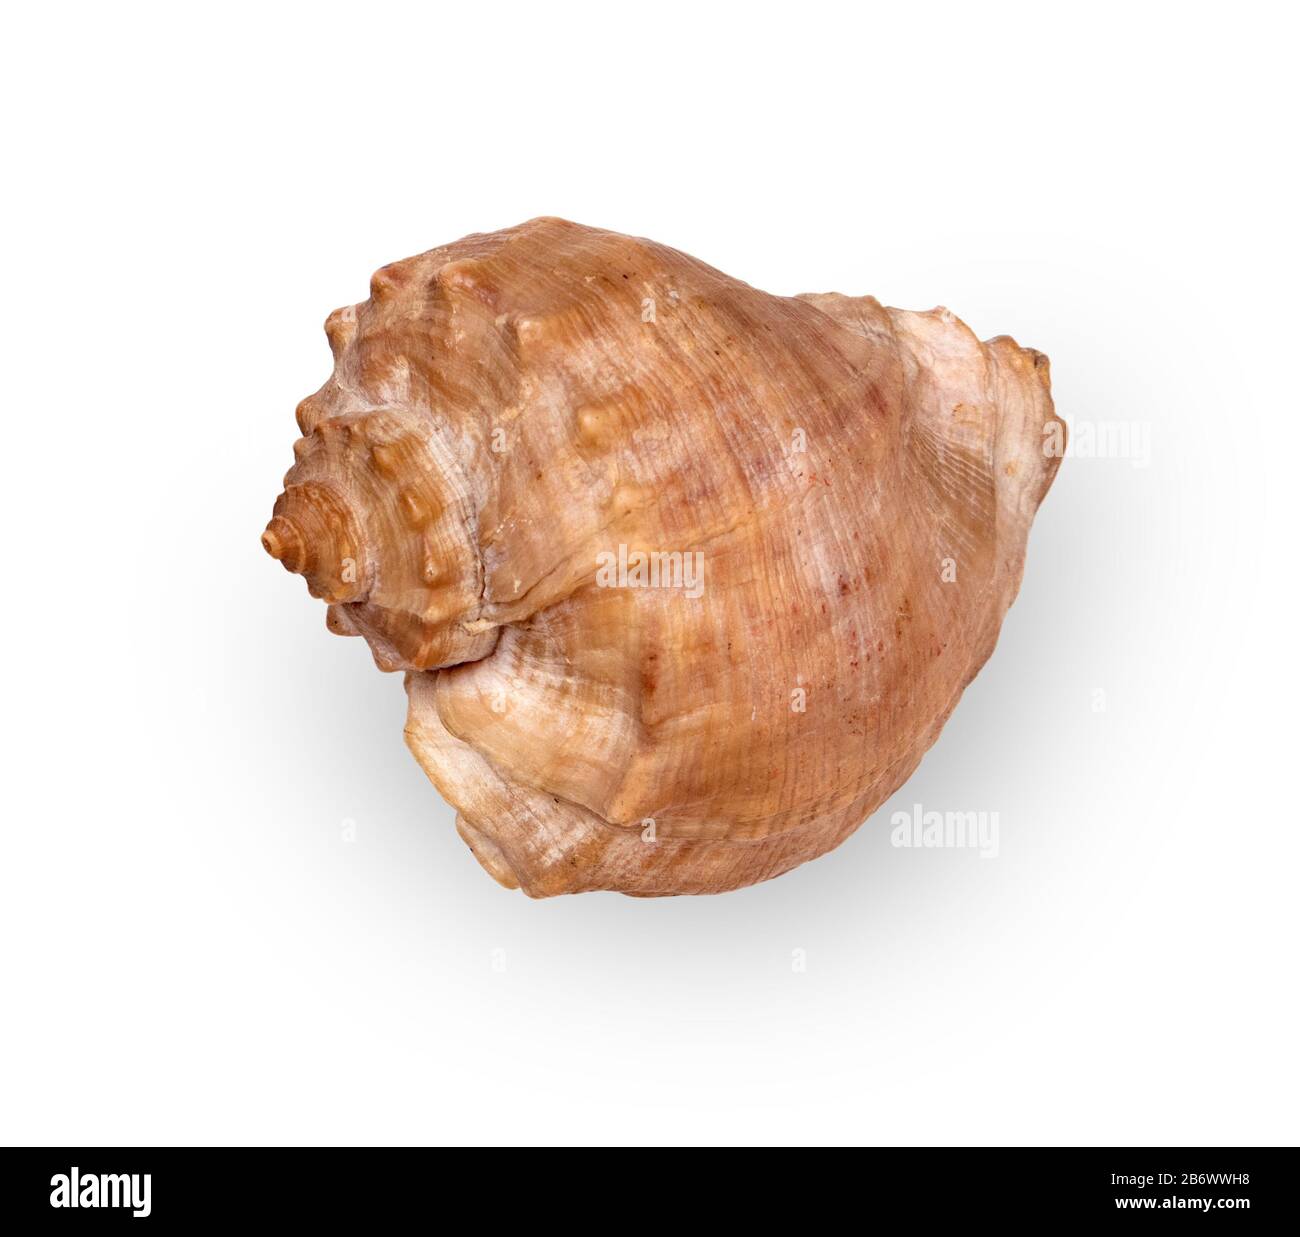 Dried empty shell of marine gastropod Rapana Venosa isolated on light background Stock Photo